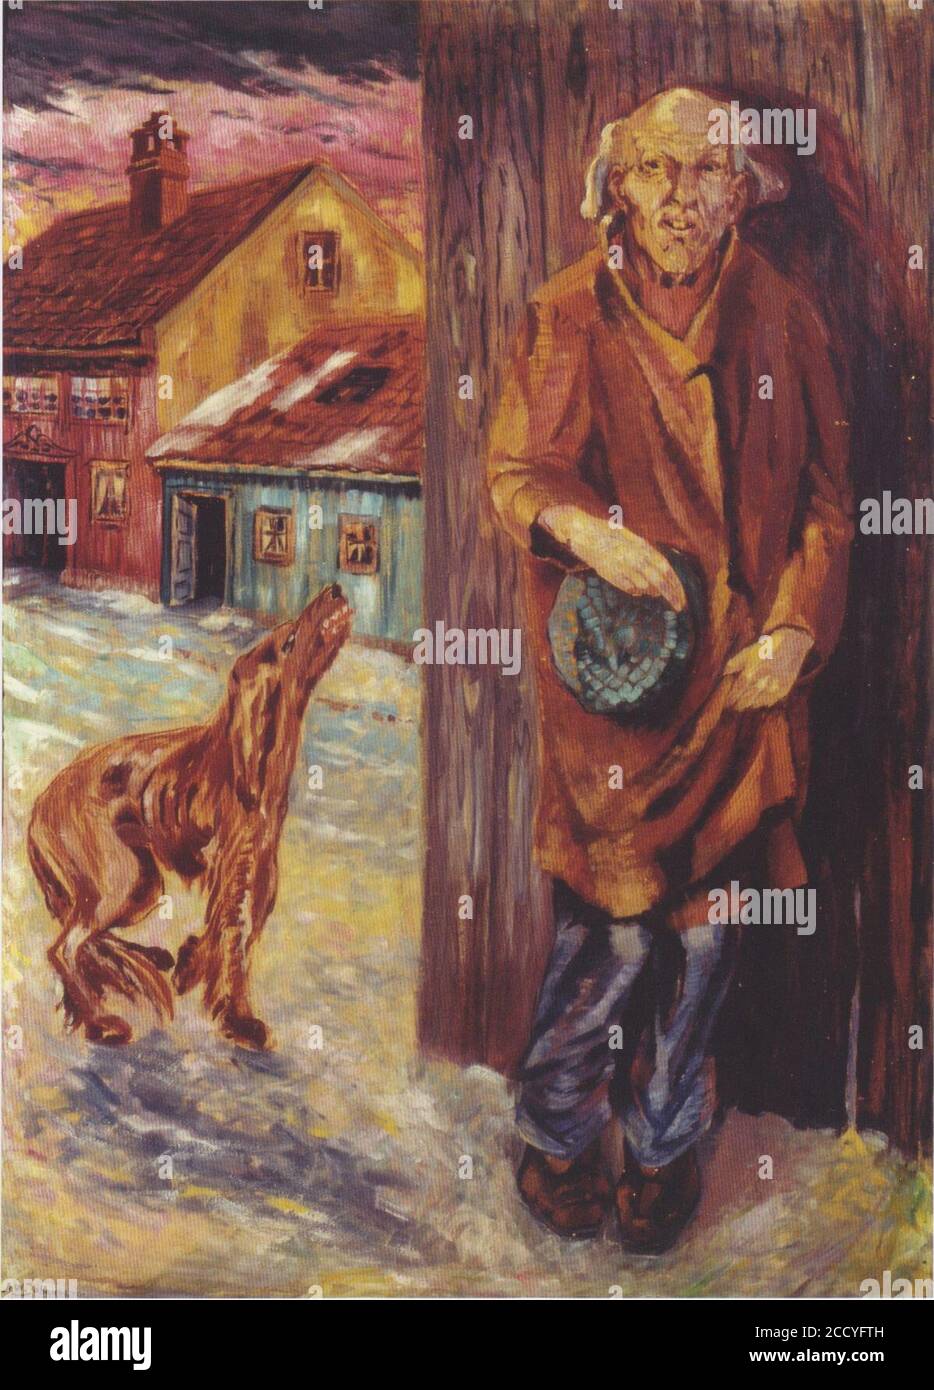 Johannessen - Bettler und Hund - 1920. Stock Photo